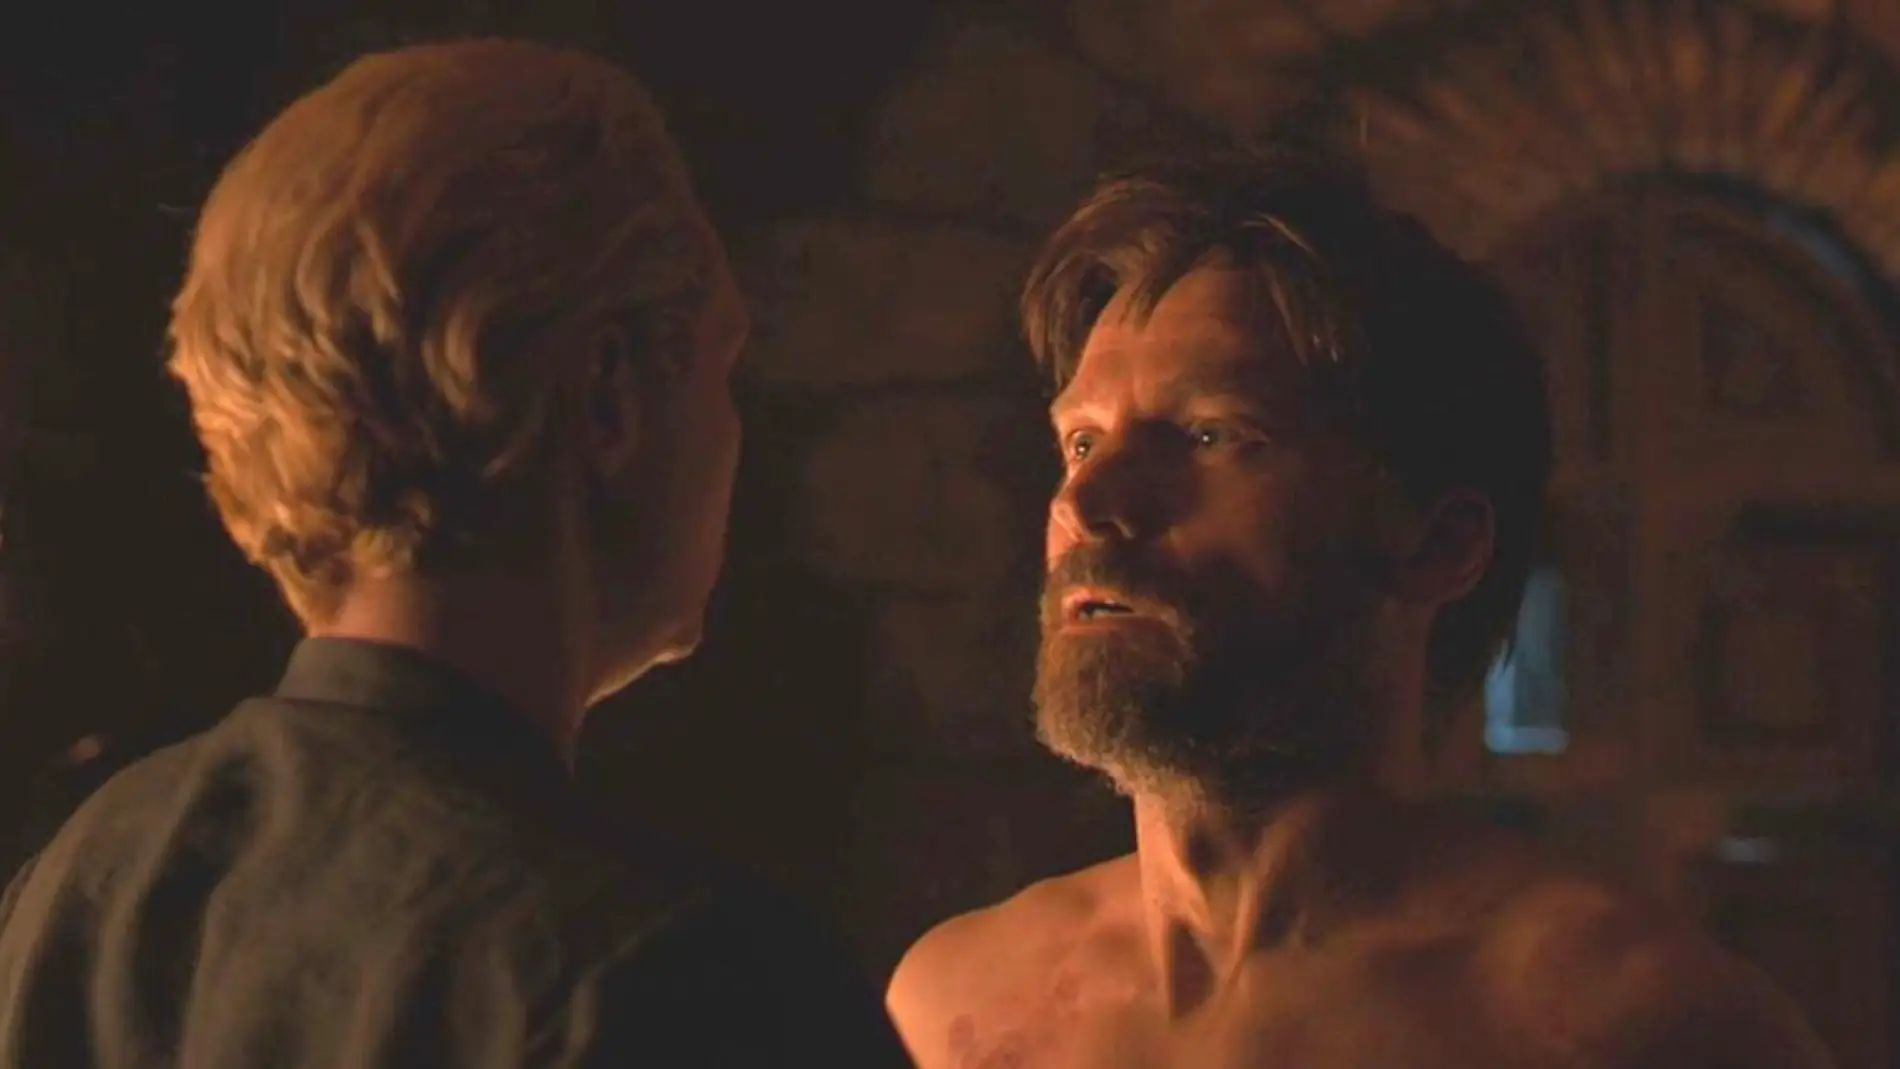 Jaime Lannister y Brienne de Tarth en 'Juego de Tronos'